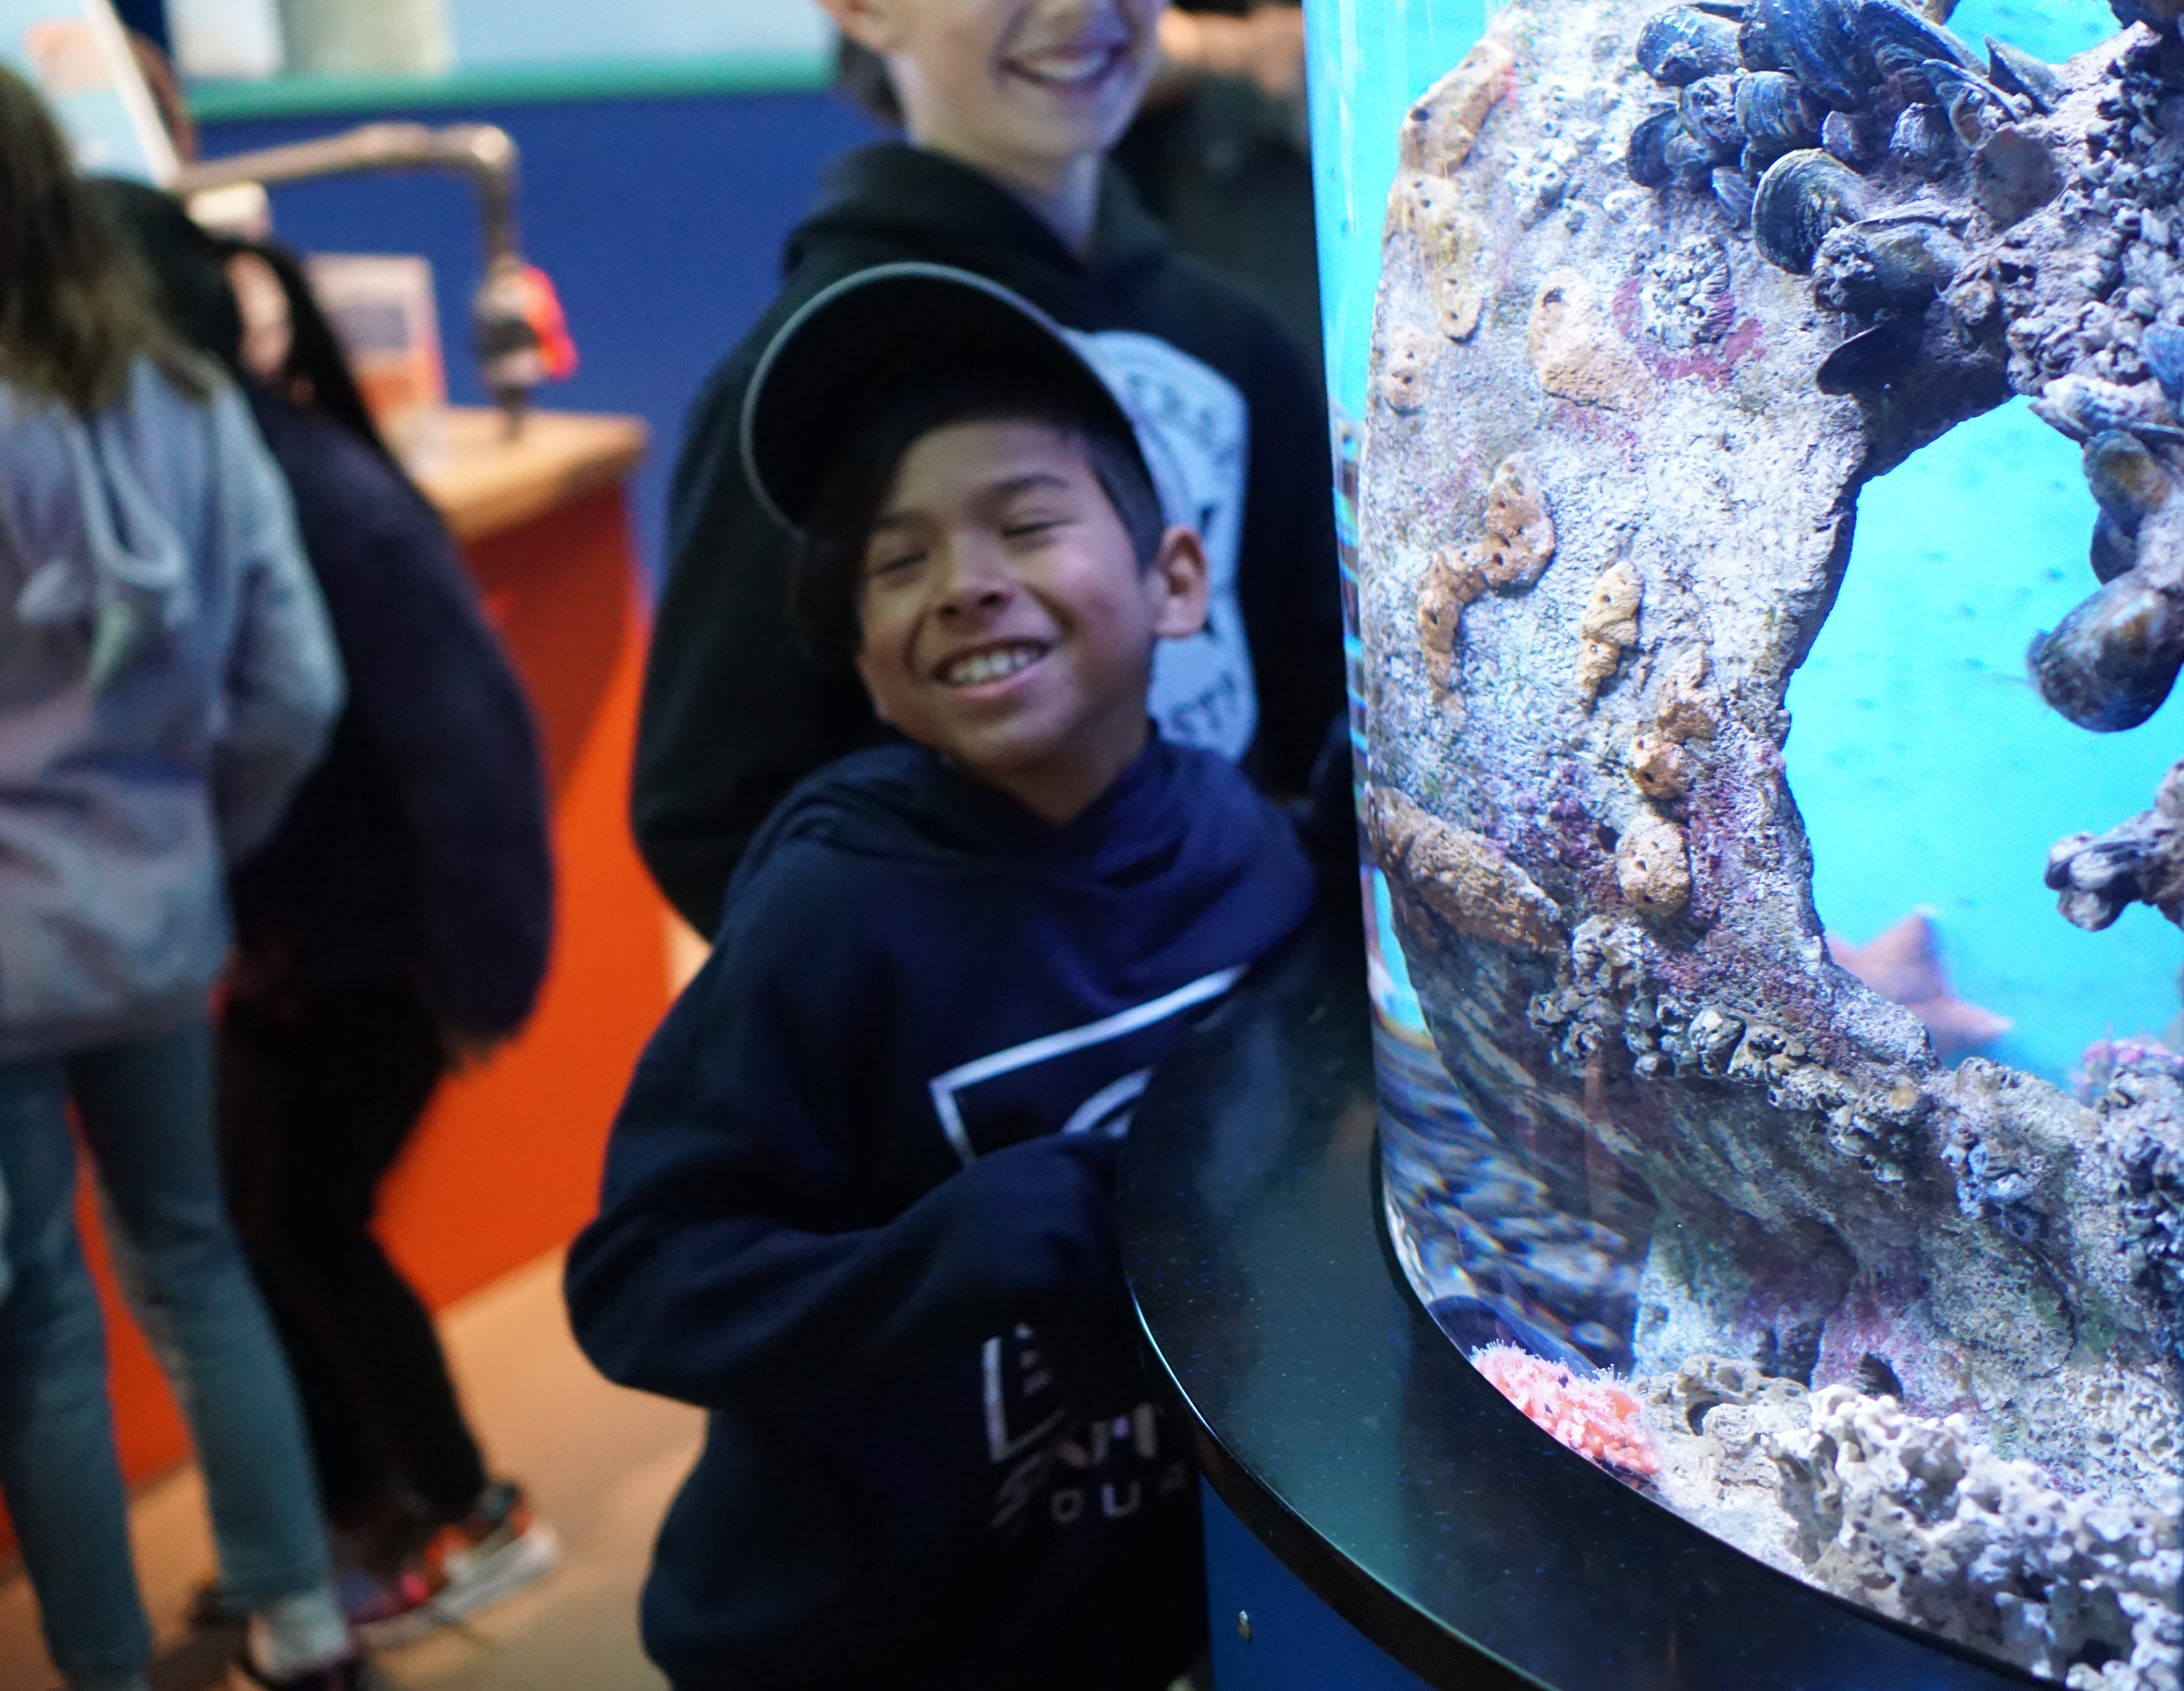 Students enjoy exploring the aquarium